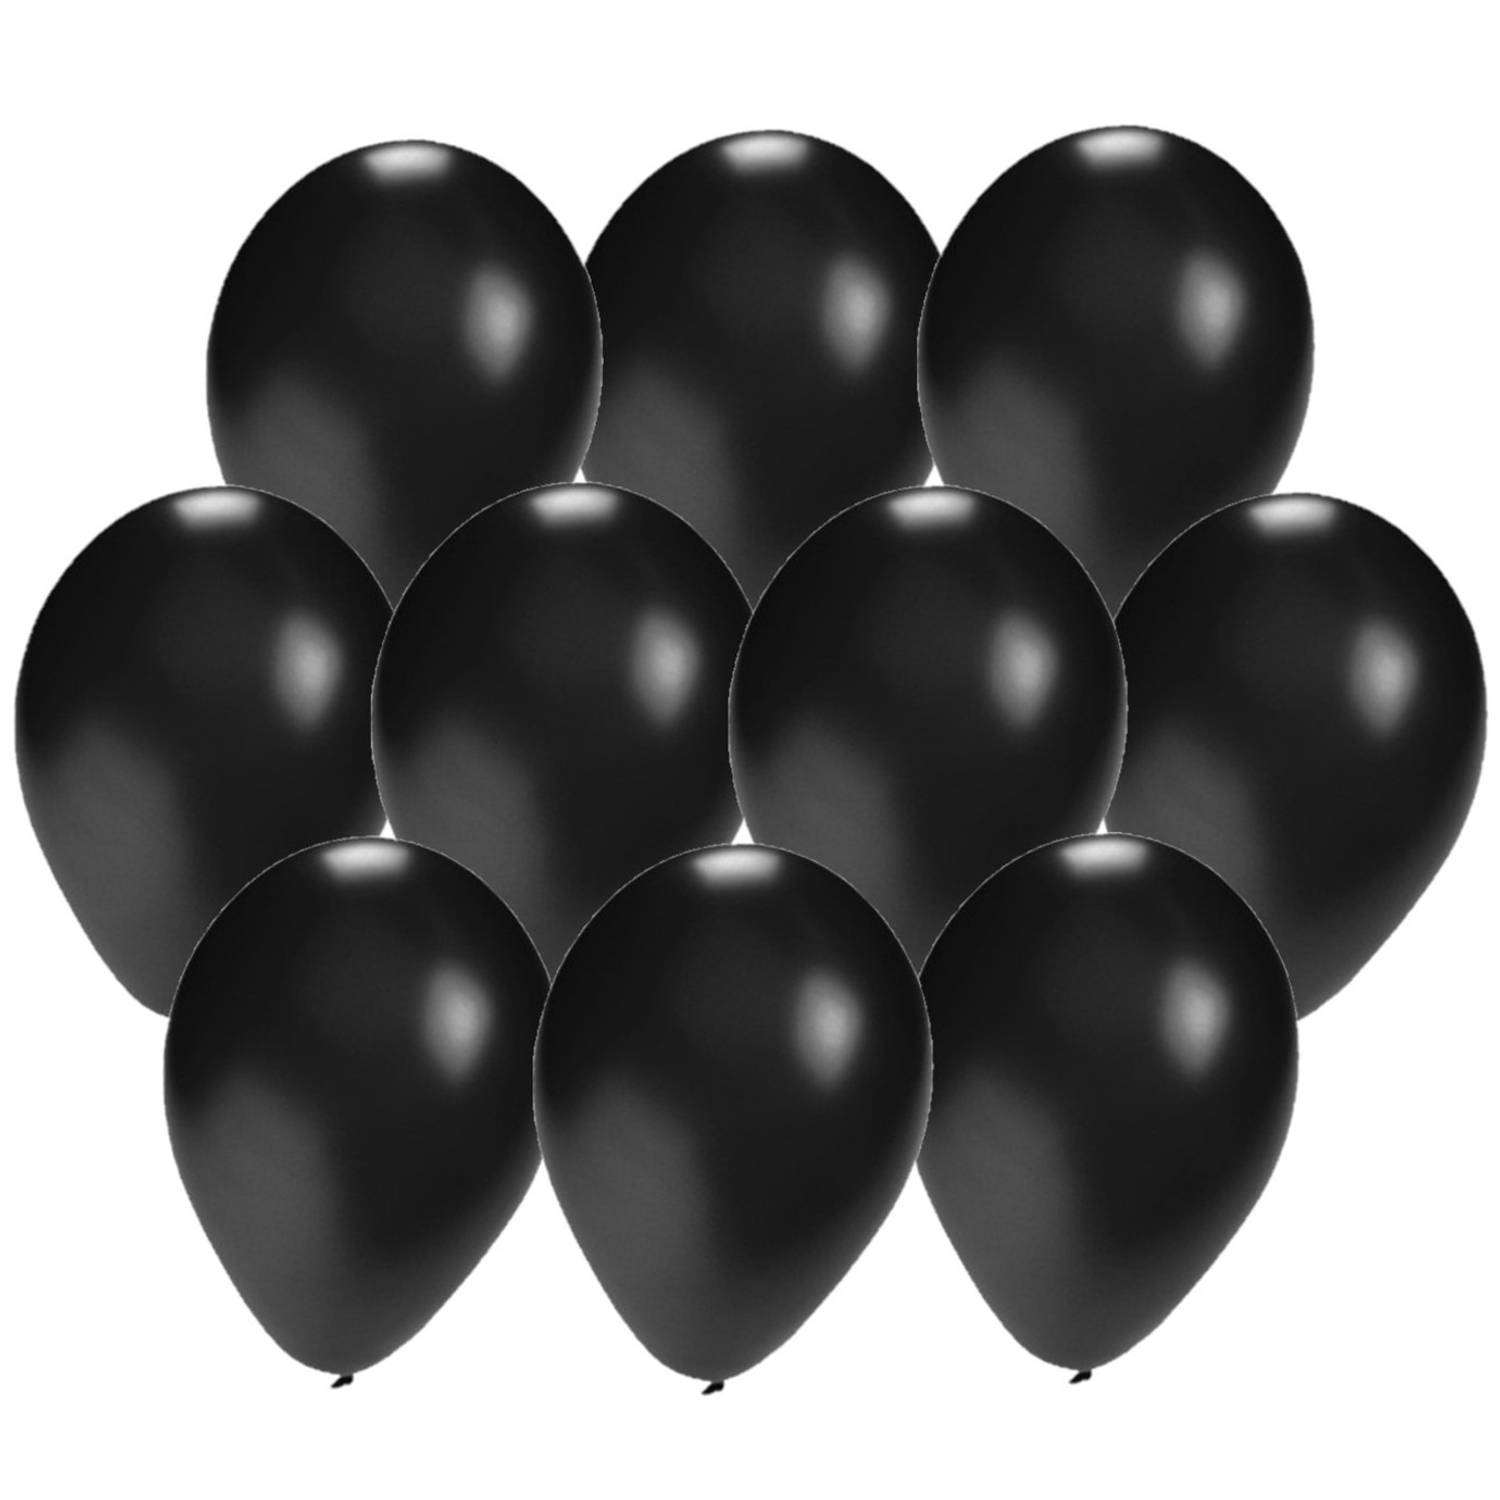 60x stuks zwarte verjaardag/party thema ballonnen van 27 cm - Ballonnen